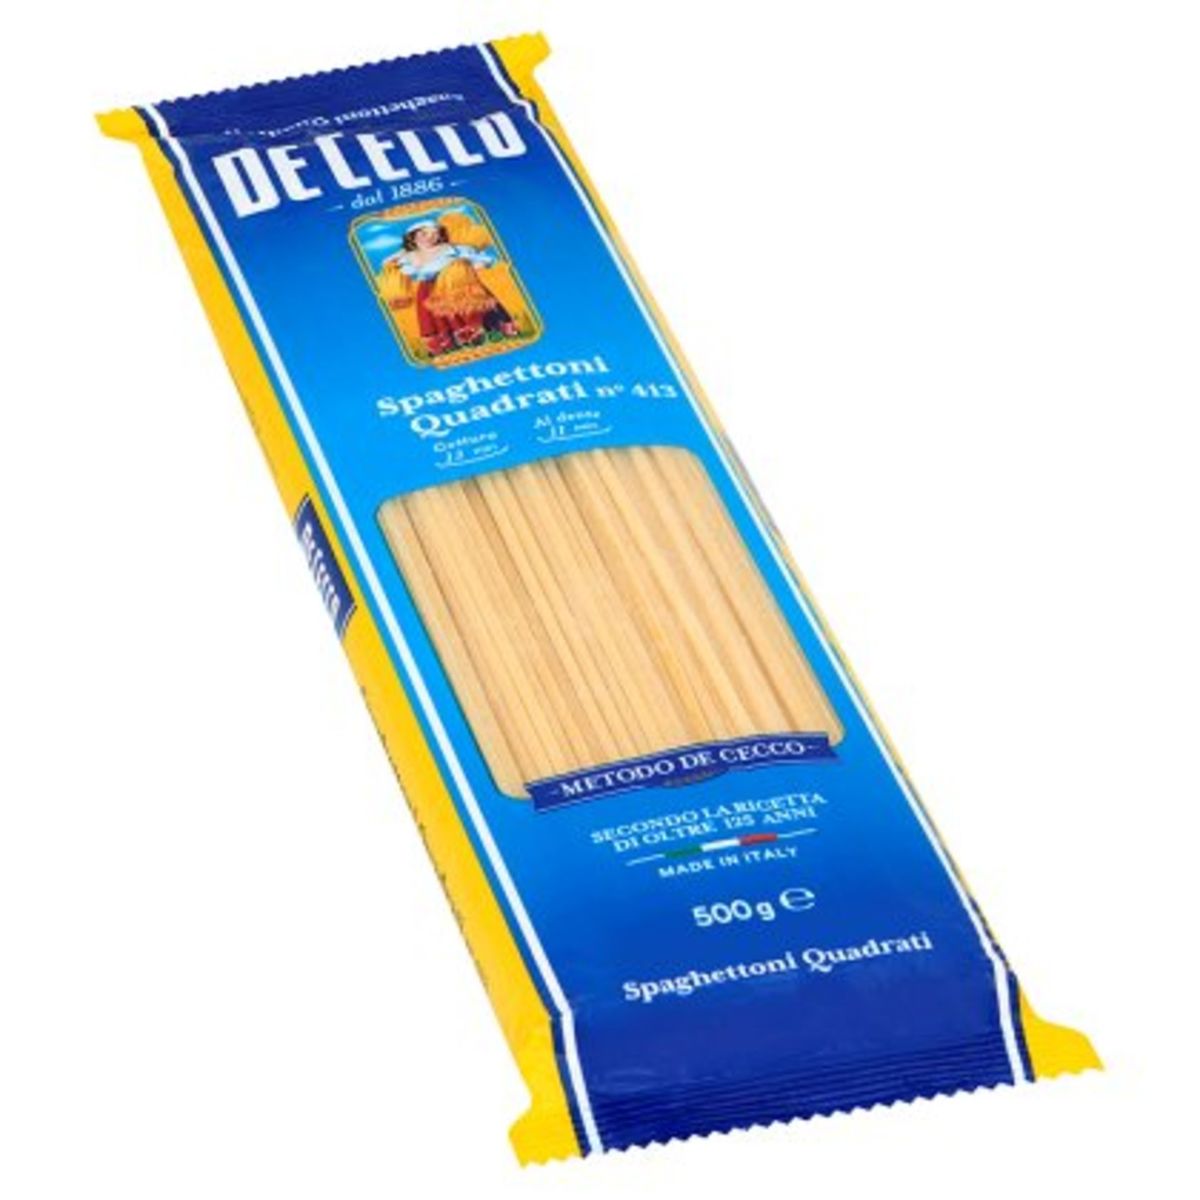 De Cecco Spaghettoni Quadrati n° 413 500 g